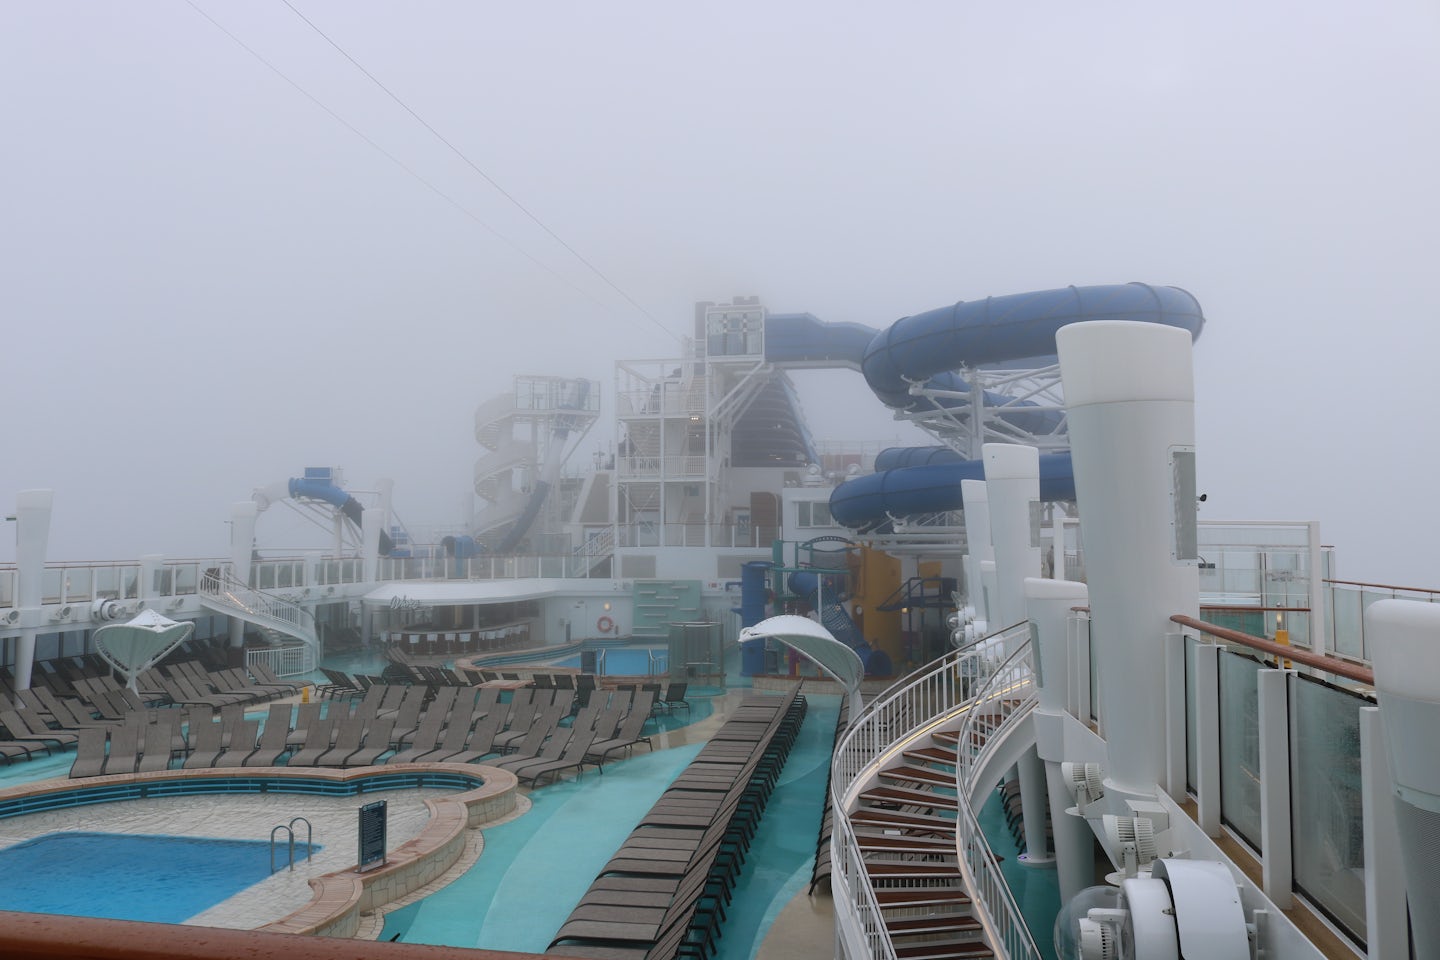 Foggy Day at sea